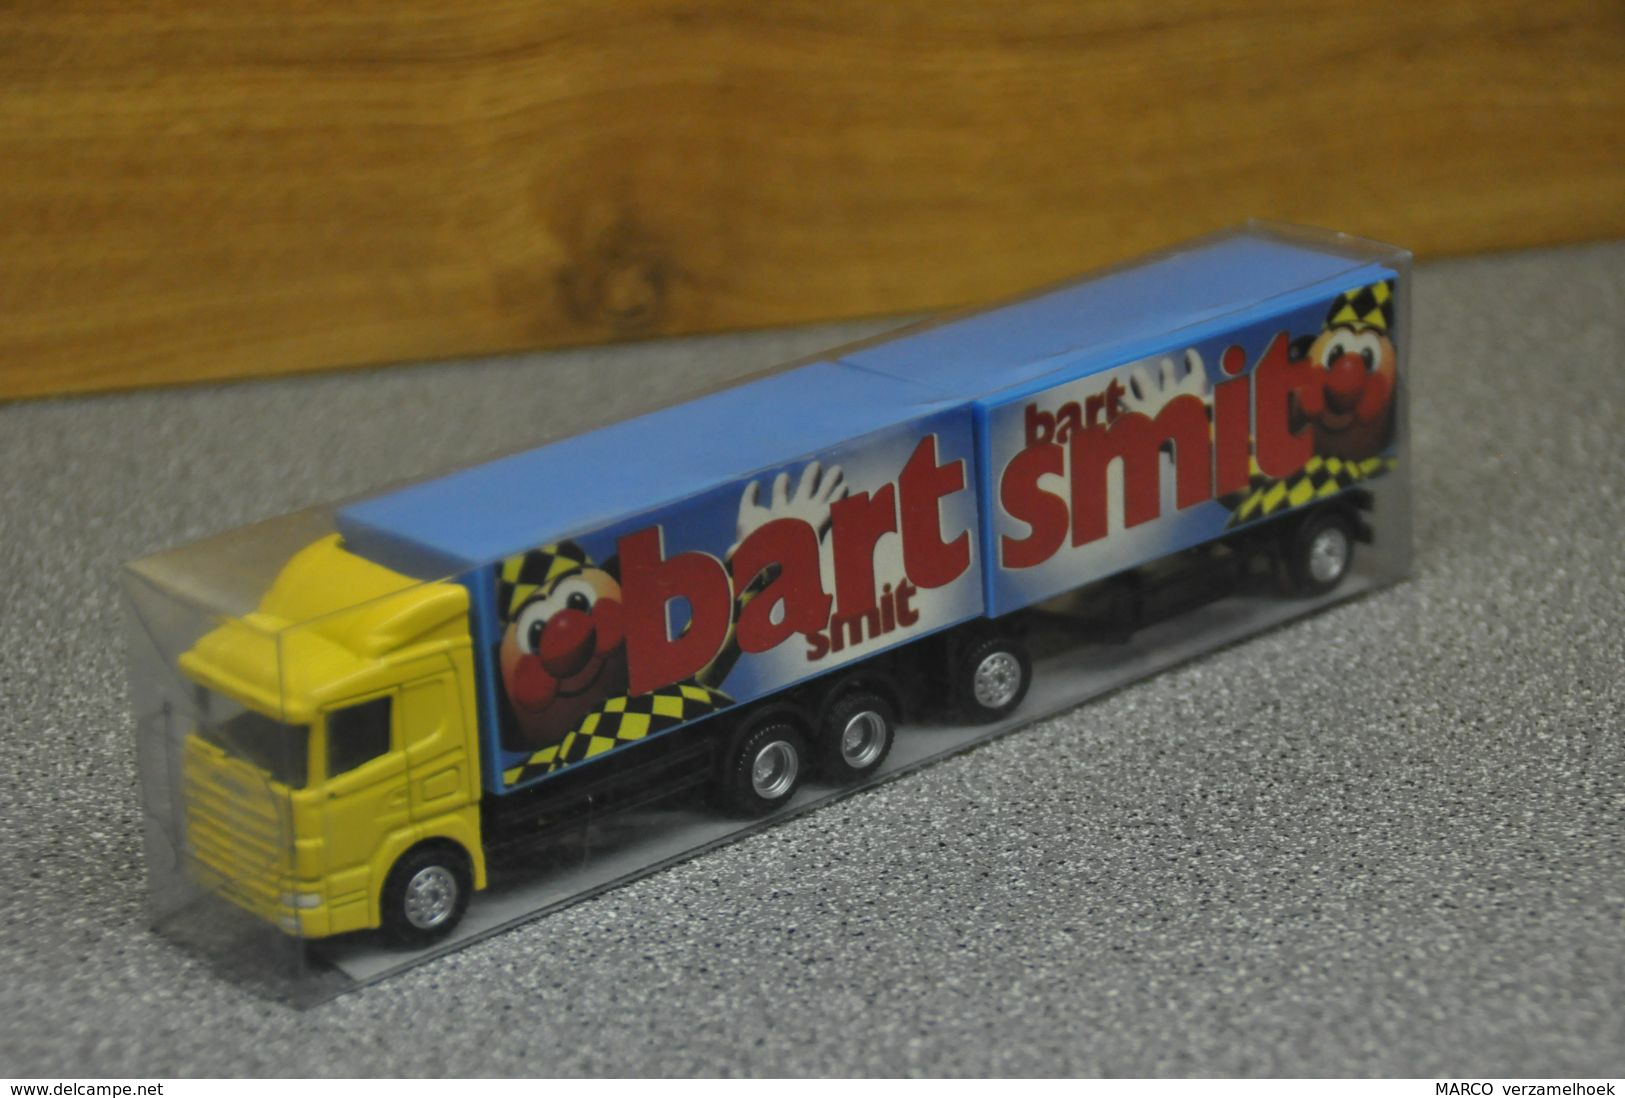 Bart Smit Speelgoed Volendam-tilburg Scale 1:87 Scania Combinatie - Trucks, Buses & Construction